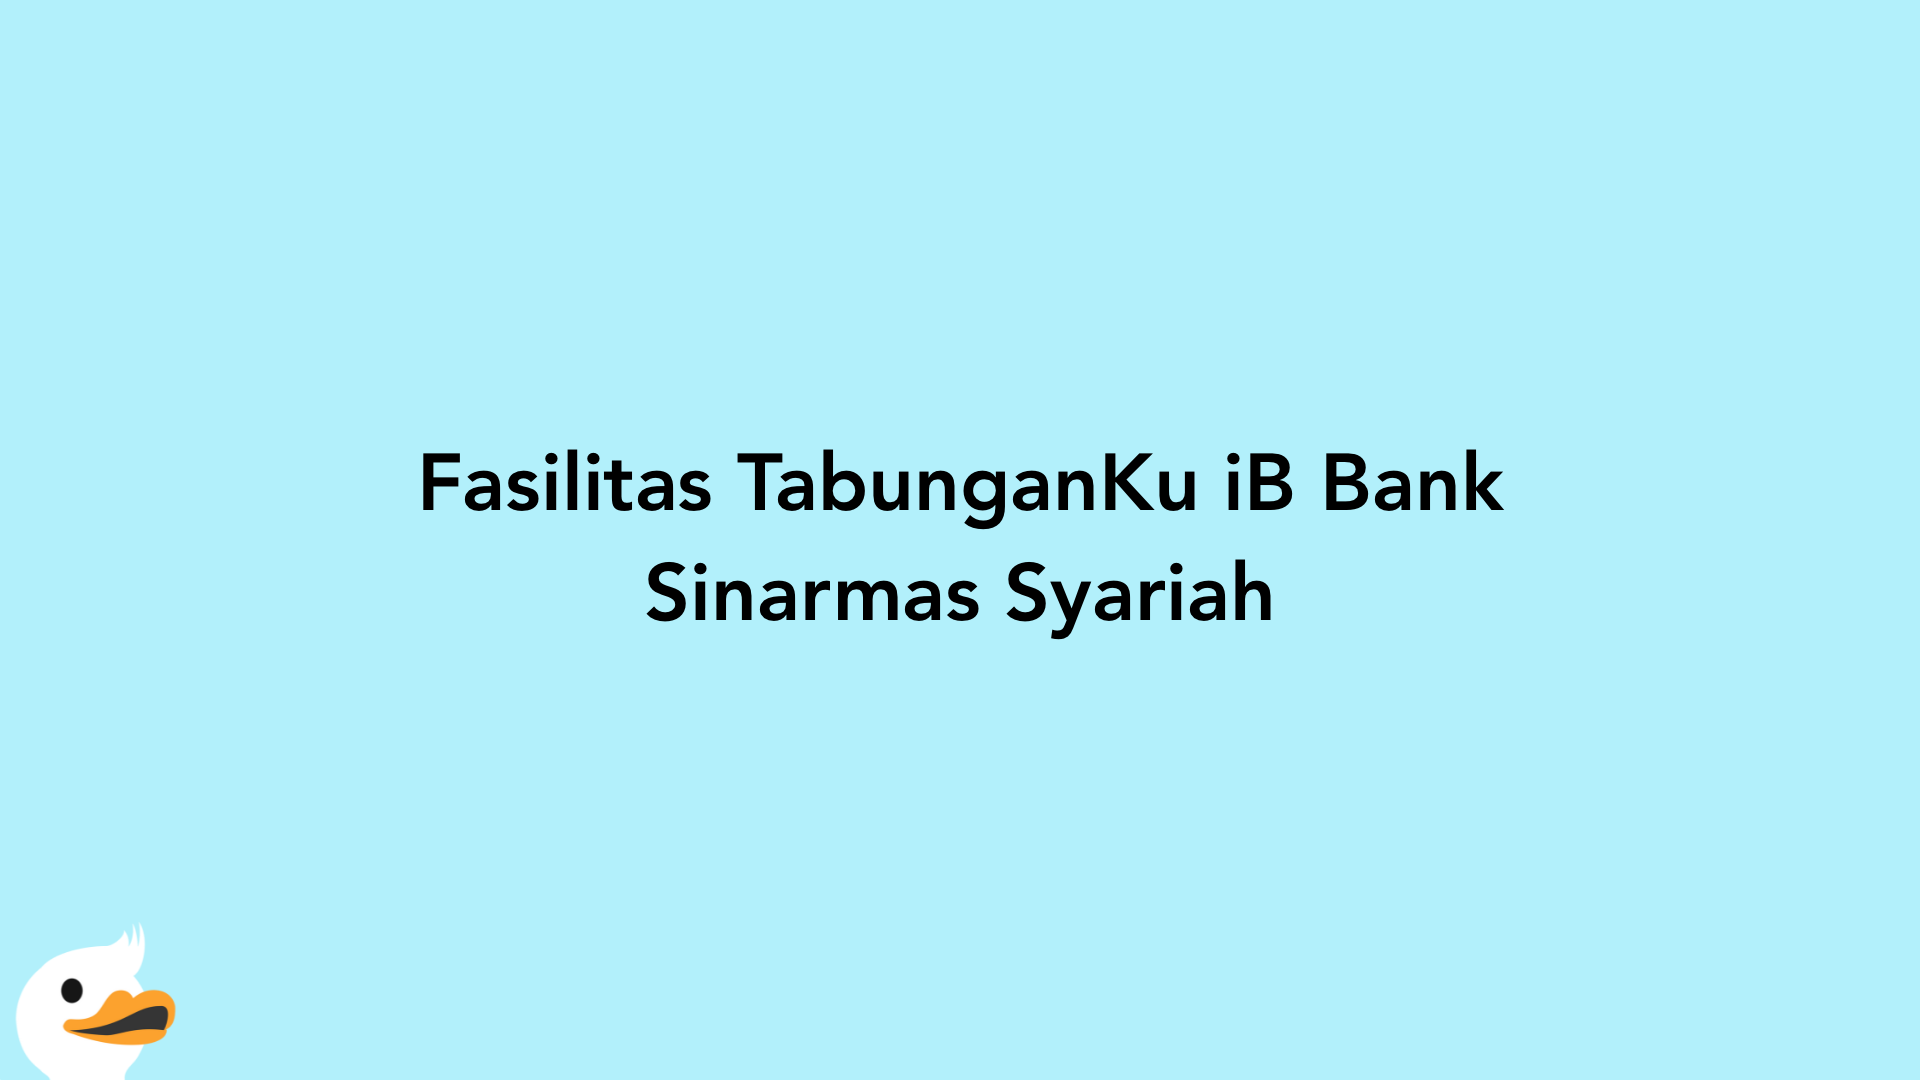 Fasilitas TabunganKu iB Bank Sinarmas Syariah